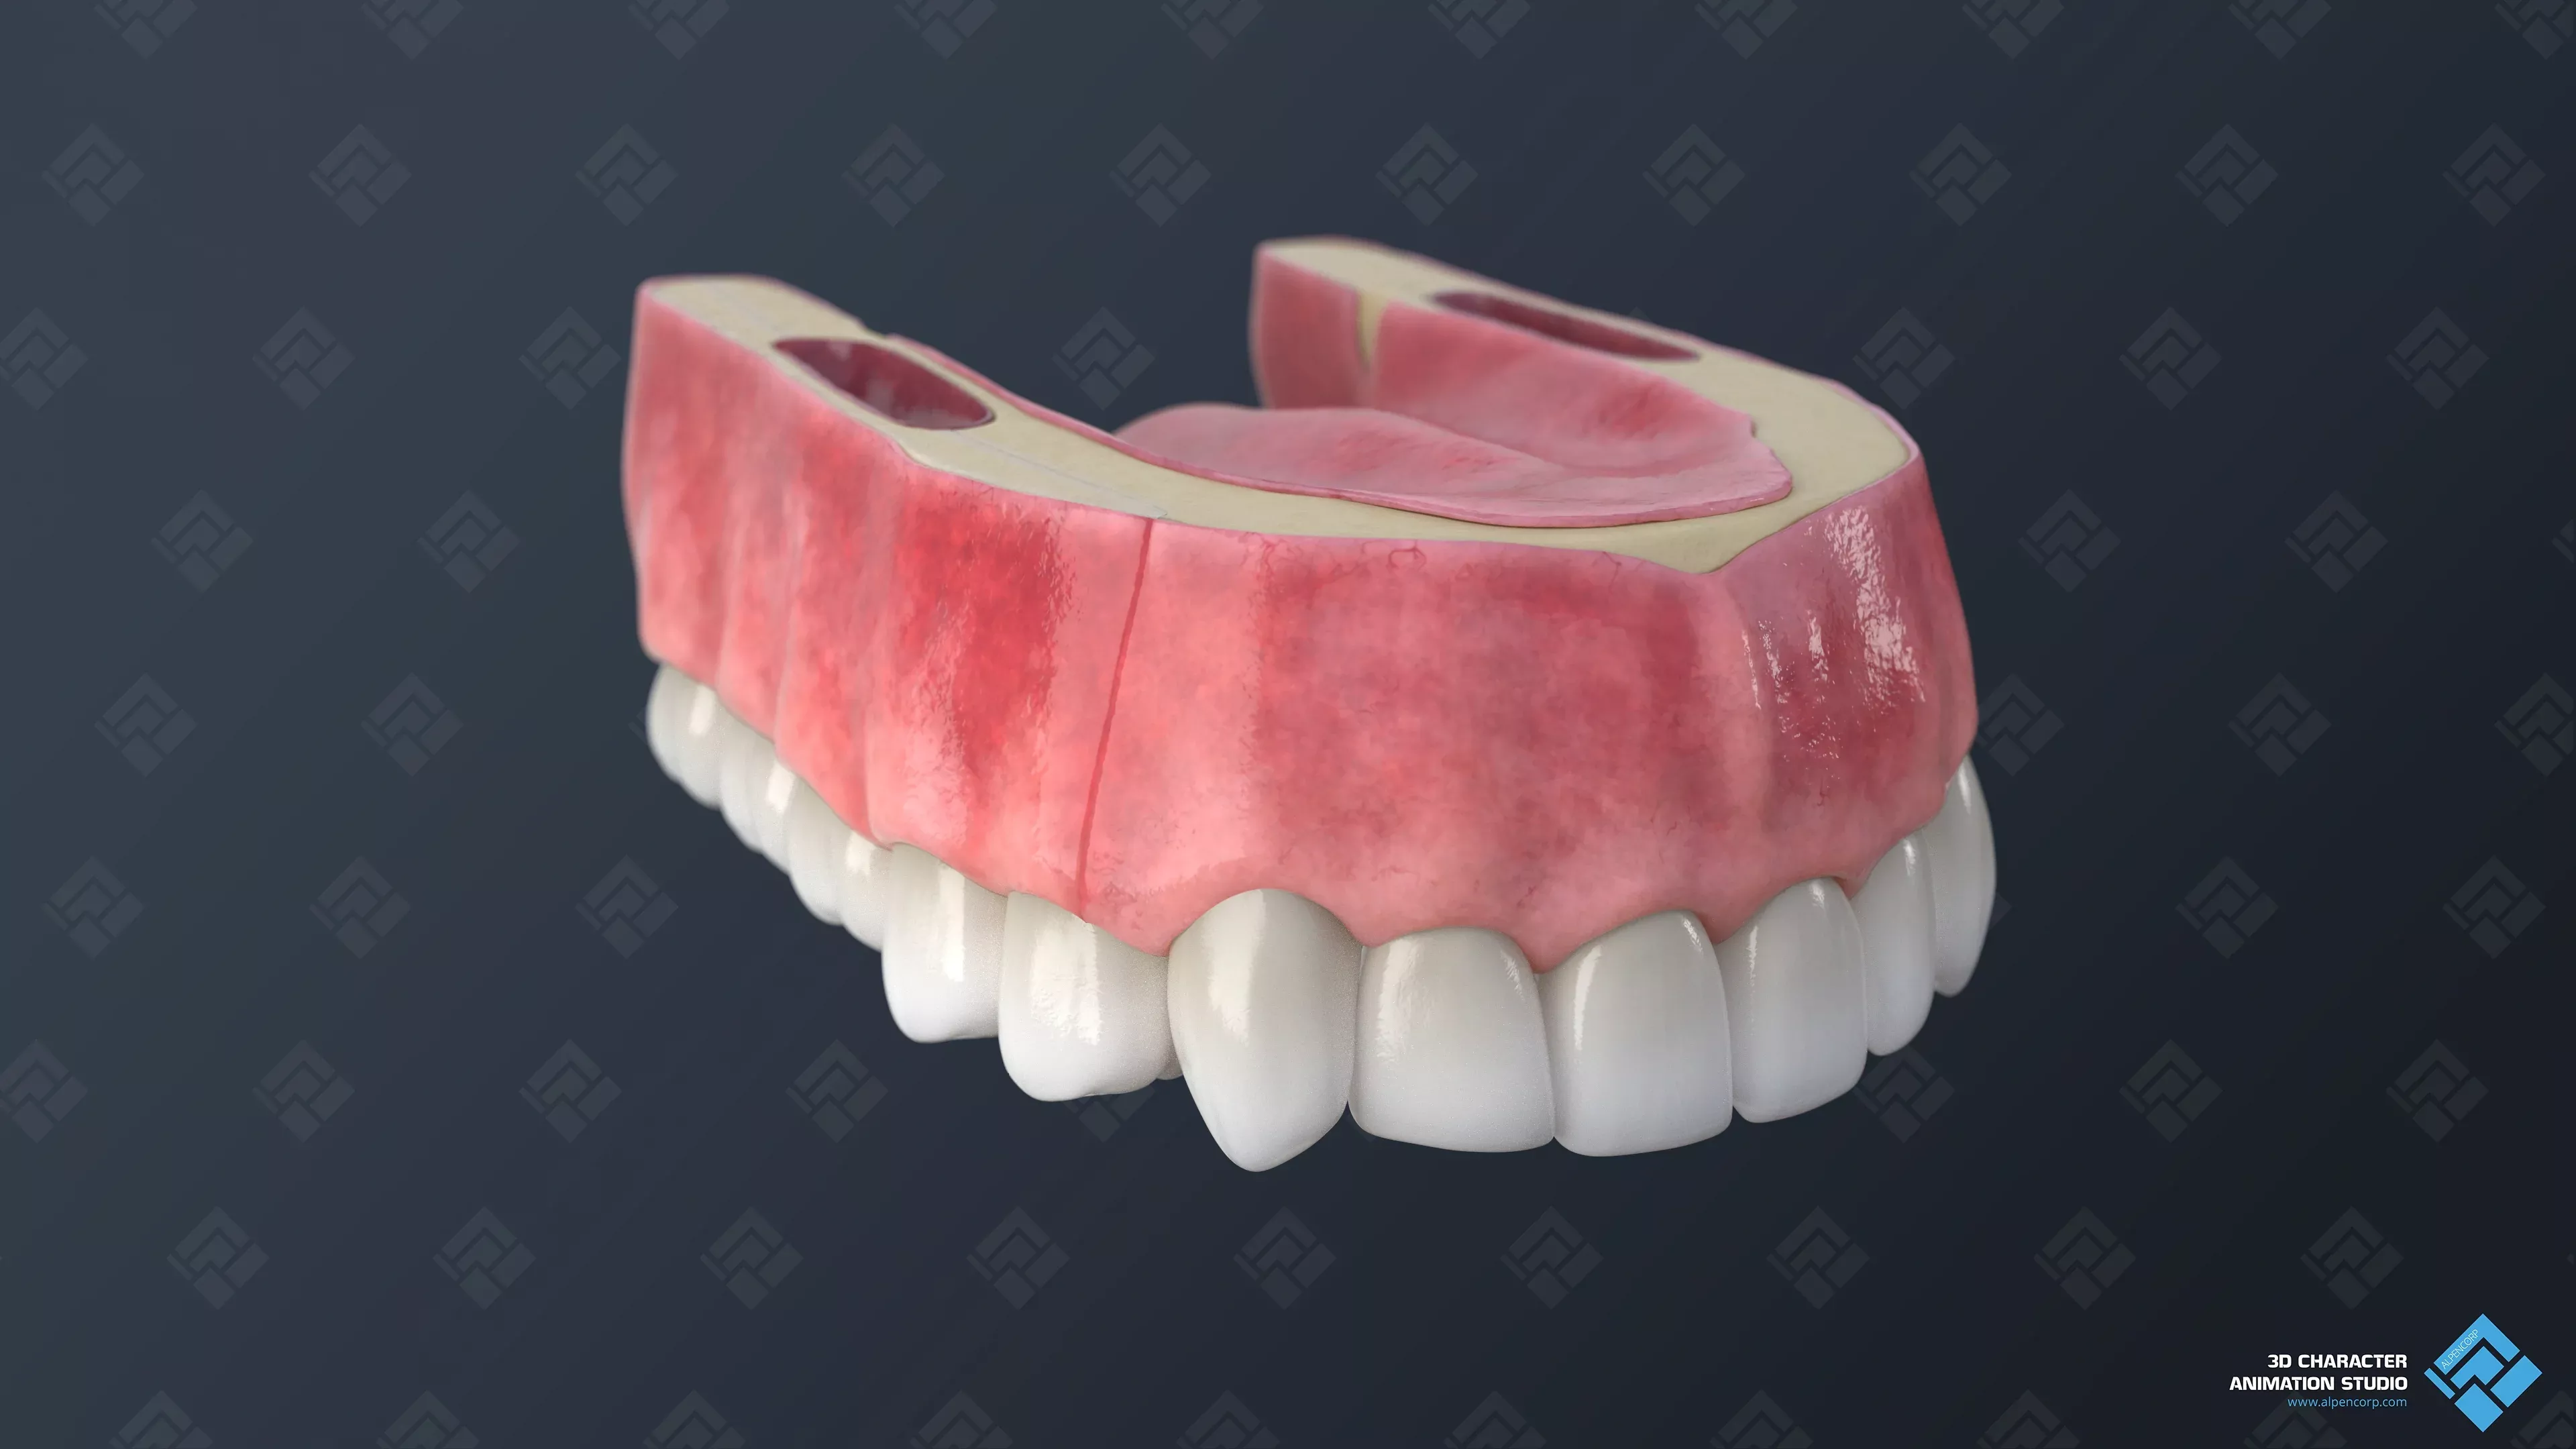 Gum Final Render for 3D Medical Animation.